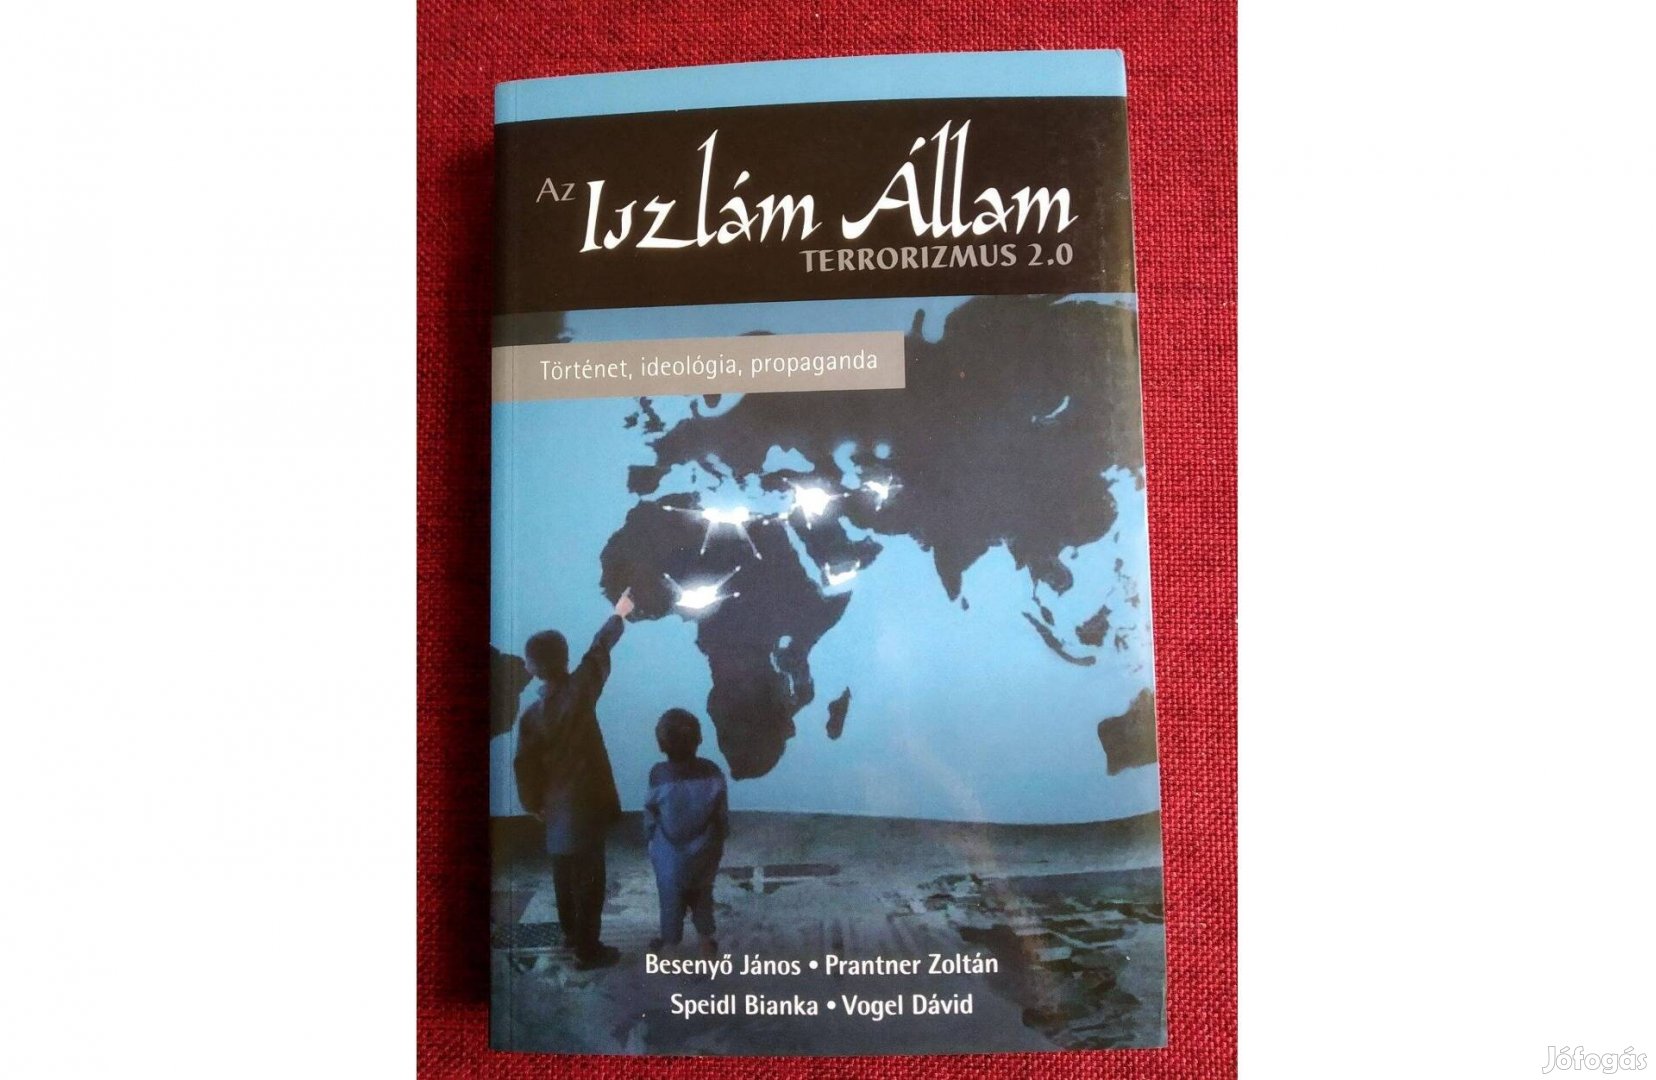 Az Iszlám Állam - Terrorizmus 2.0 - Történet, ideológia, propaganda